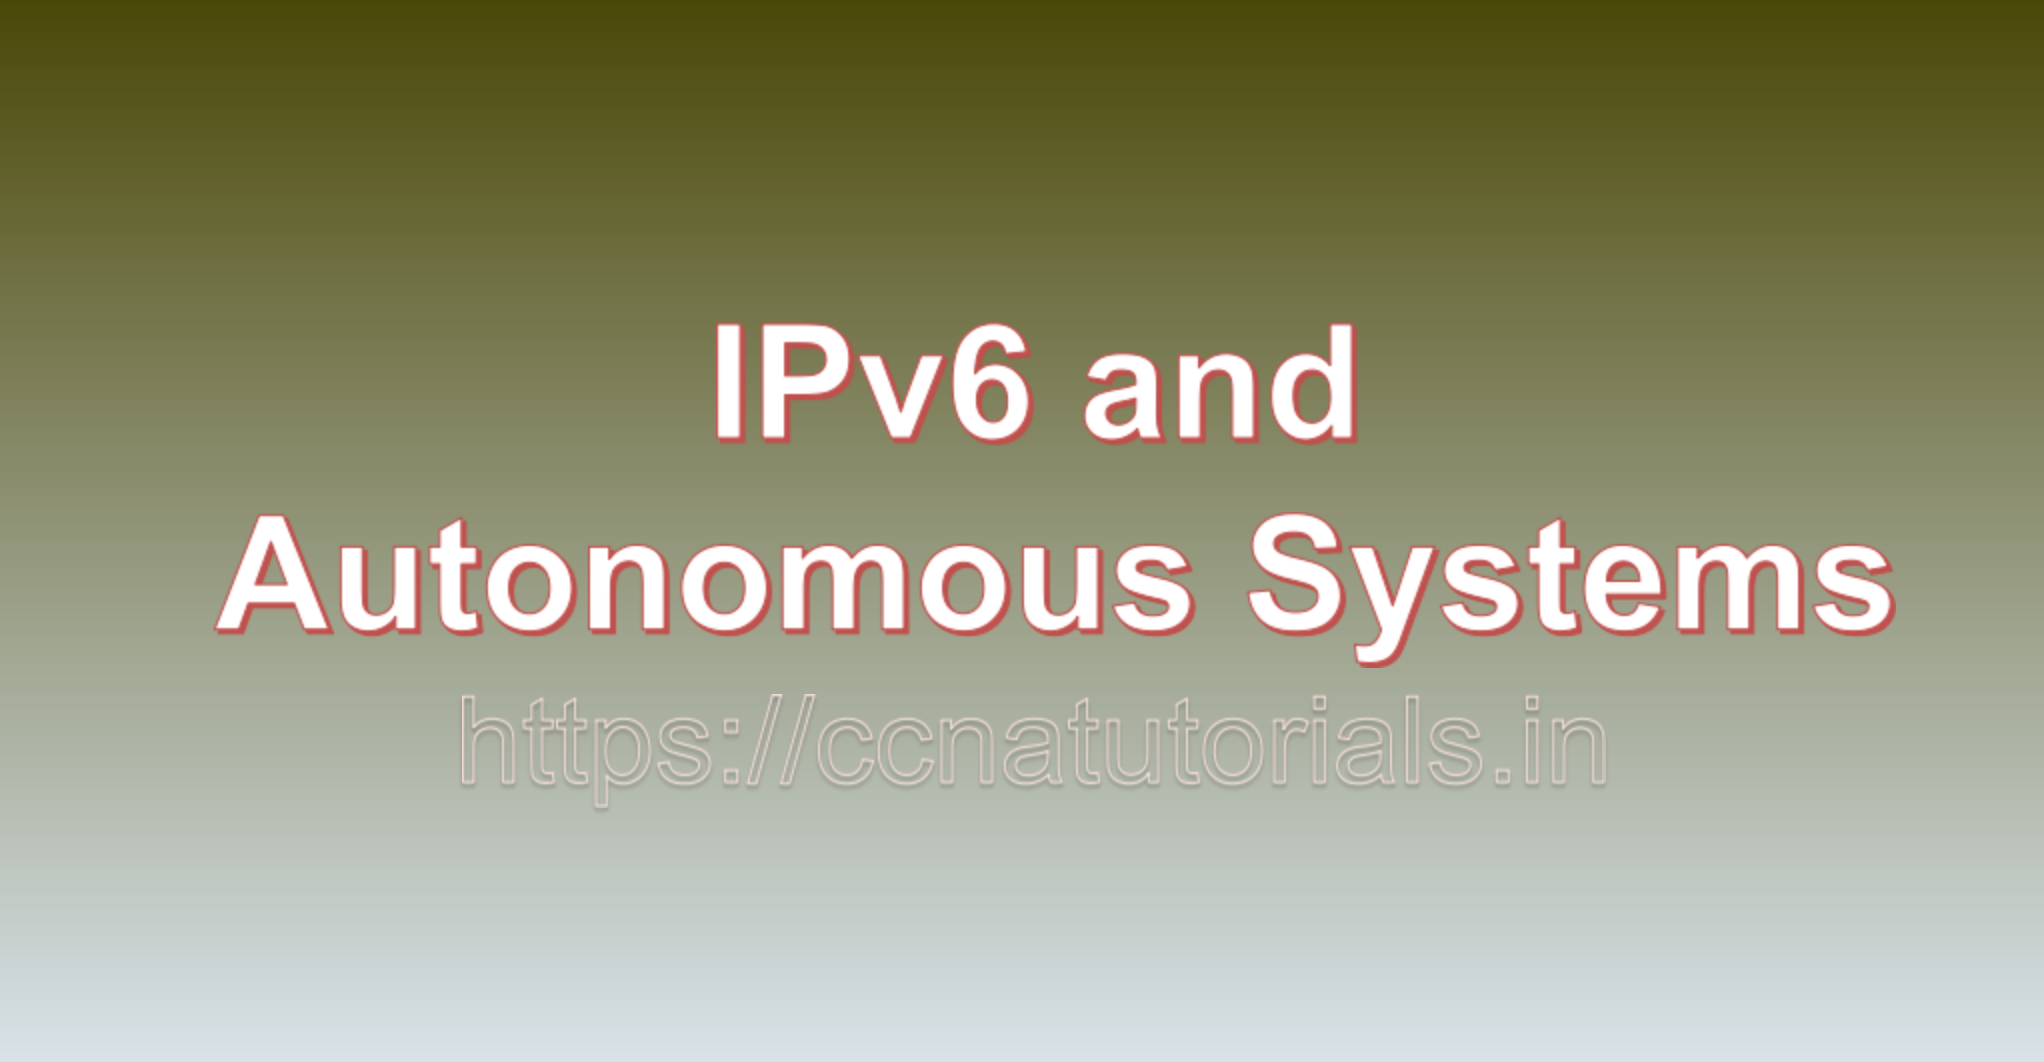 IPv6 and Autonomous Systems, ccna, ccna tutorials